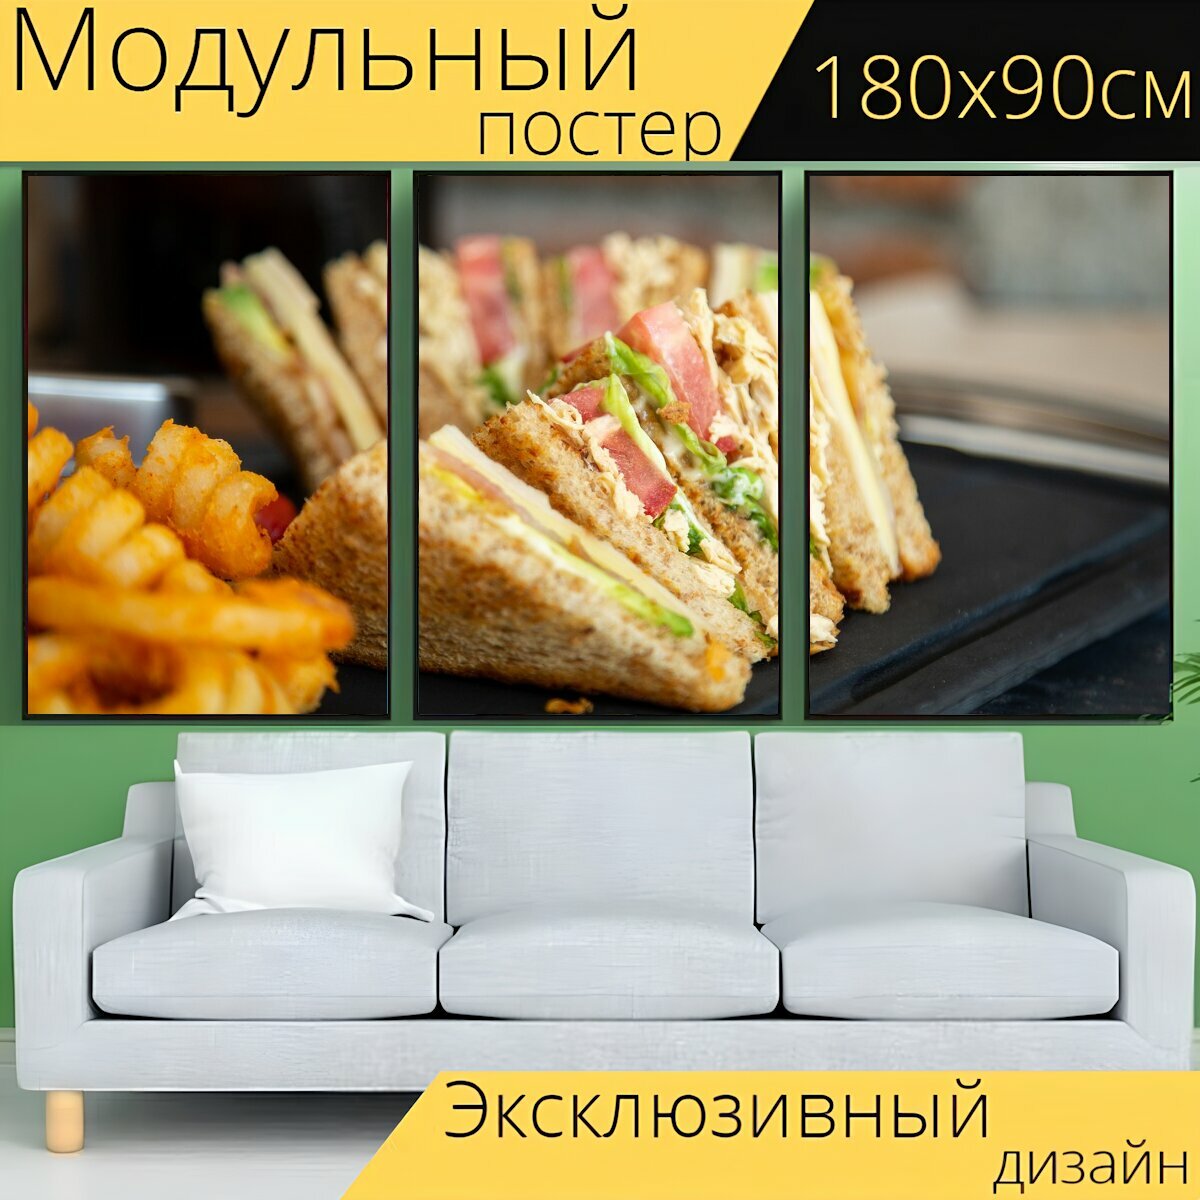 Модульный постер "Бутерброд, хлеб, ветчина" 180 x 90 см. для интерьера